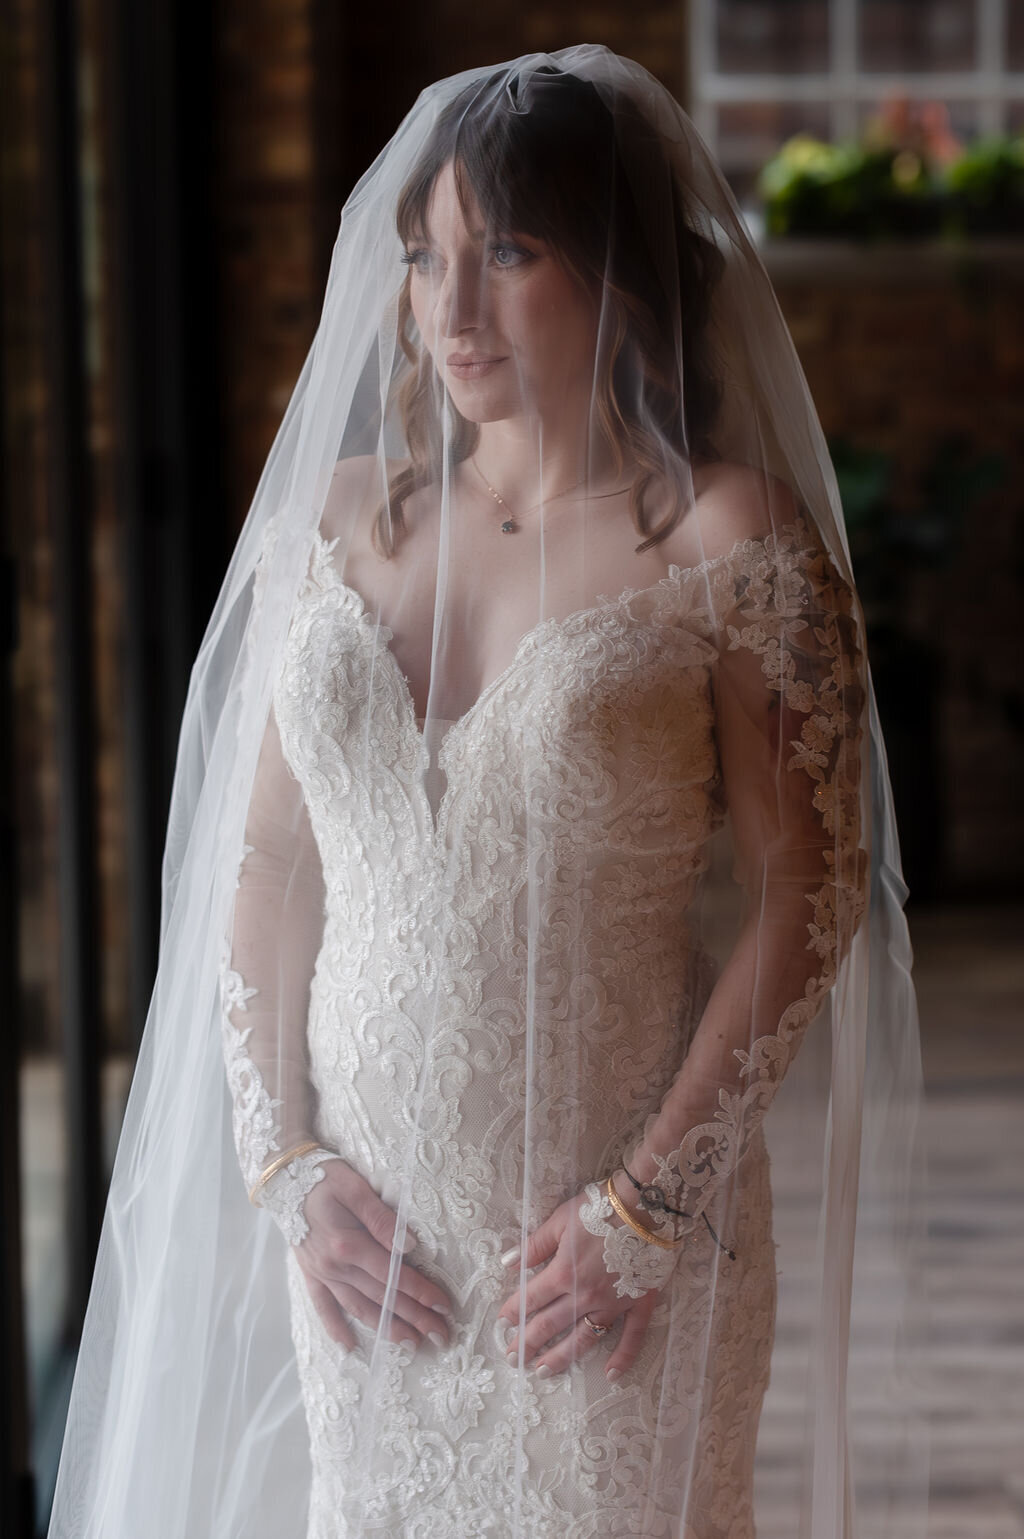 Bride under veil with window light